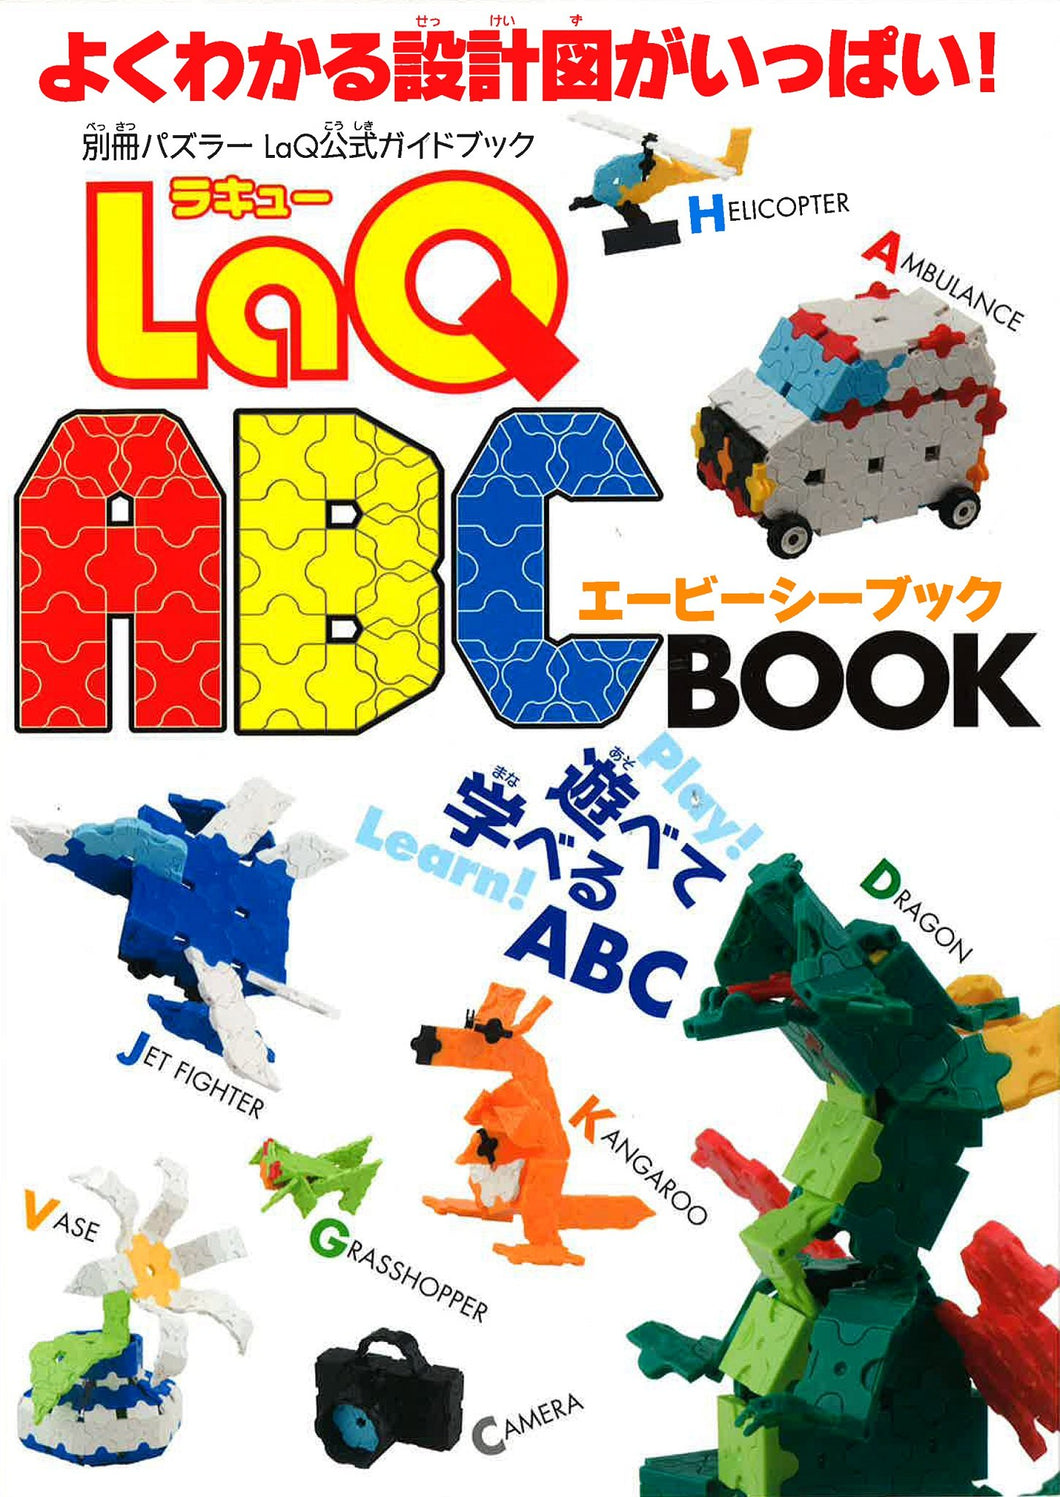 LaQ book abc